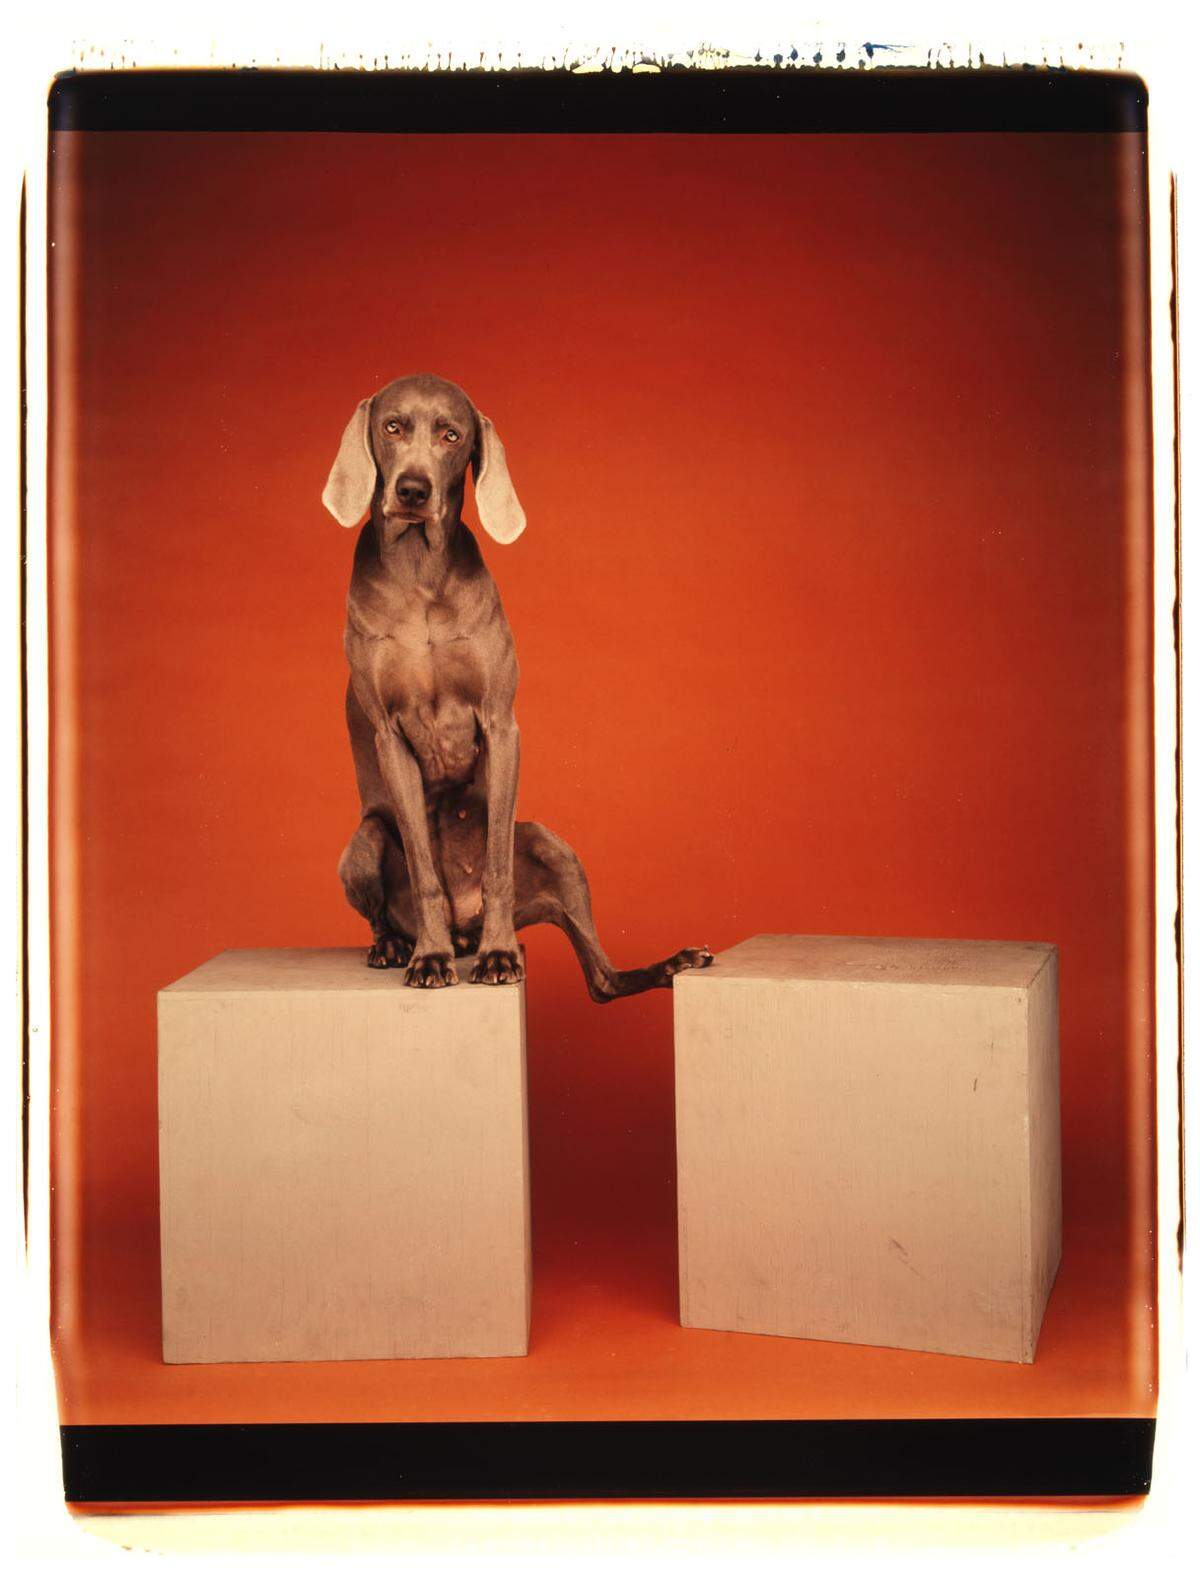 Es war 1970, als der Fotograf William Wegman das erste Mal seinen Hund Man Ray, einen Weimaraner, fotografierte. Und somit den Grundstein für ein fotografisches Lebenswerk legte.